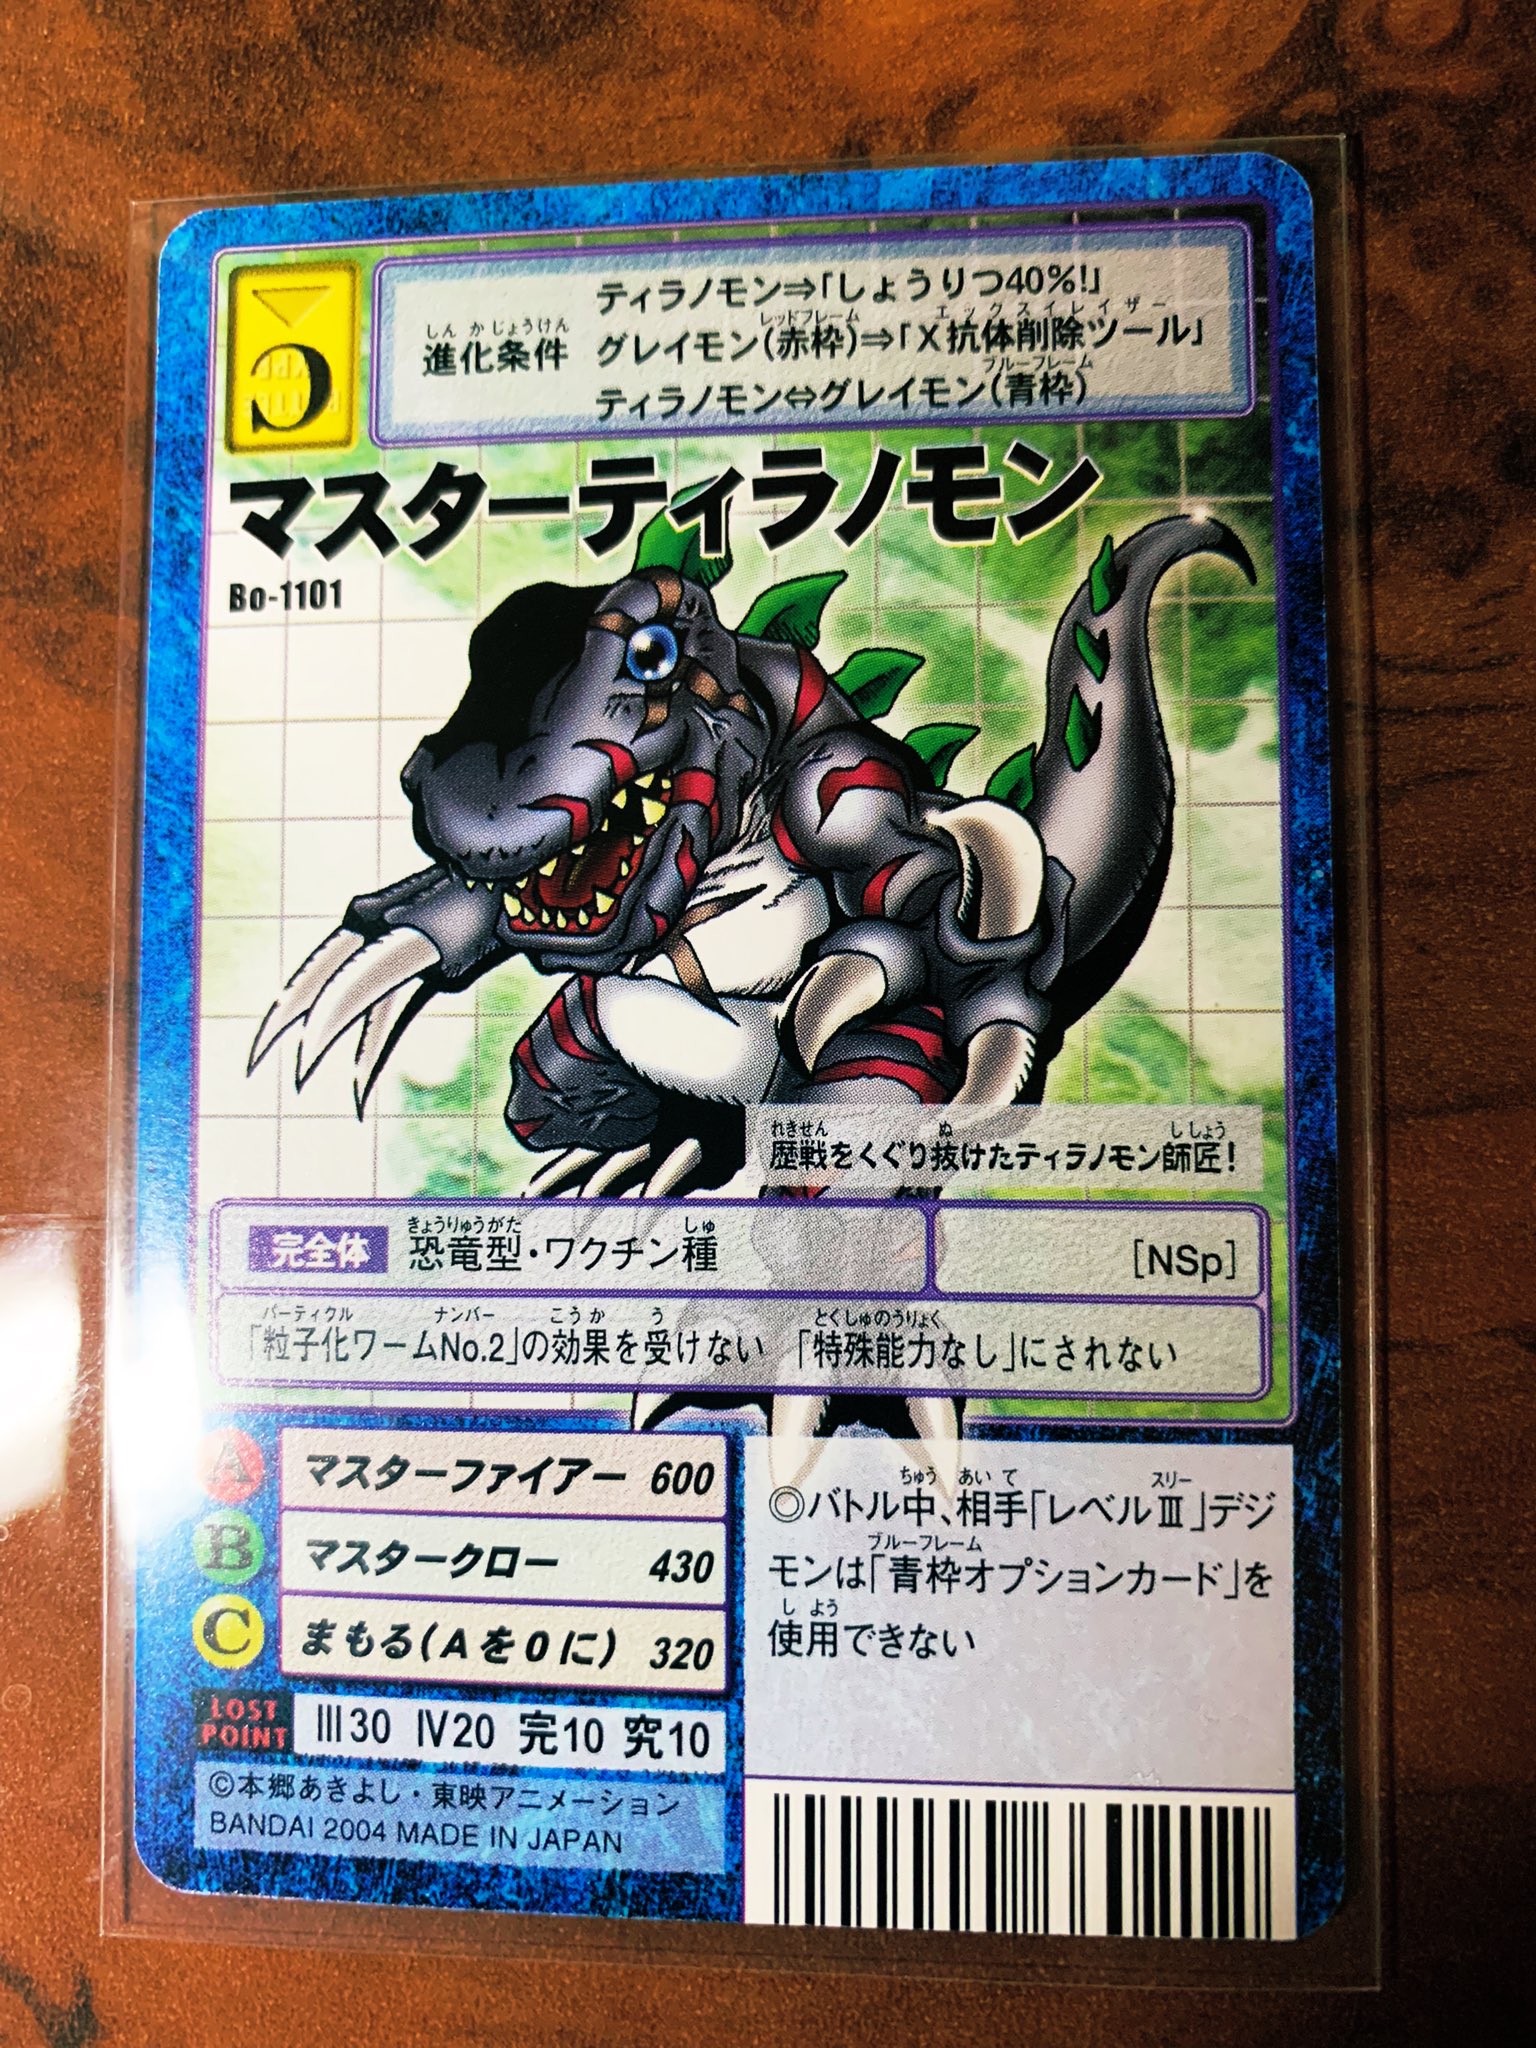 旧デジモンカードコレクション (@Digimon_card) / Twitter